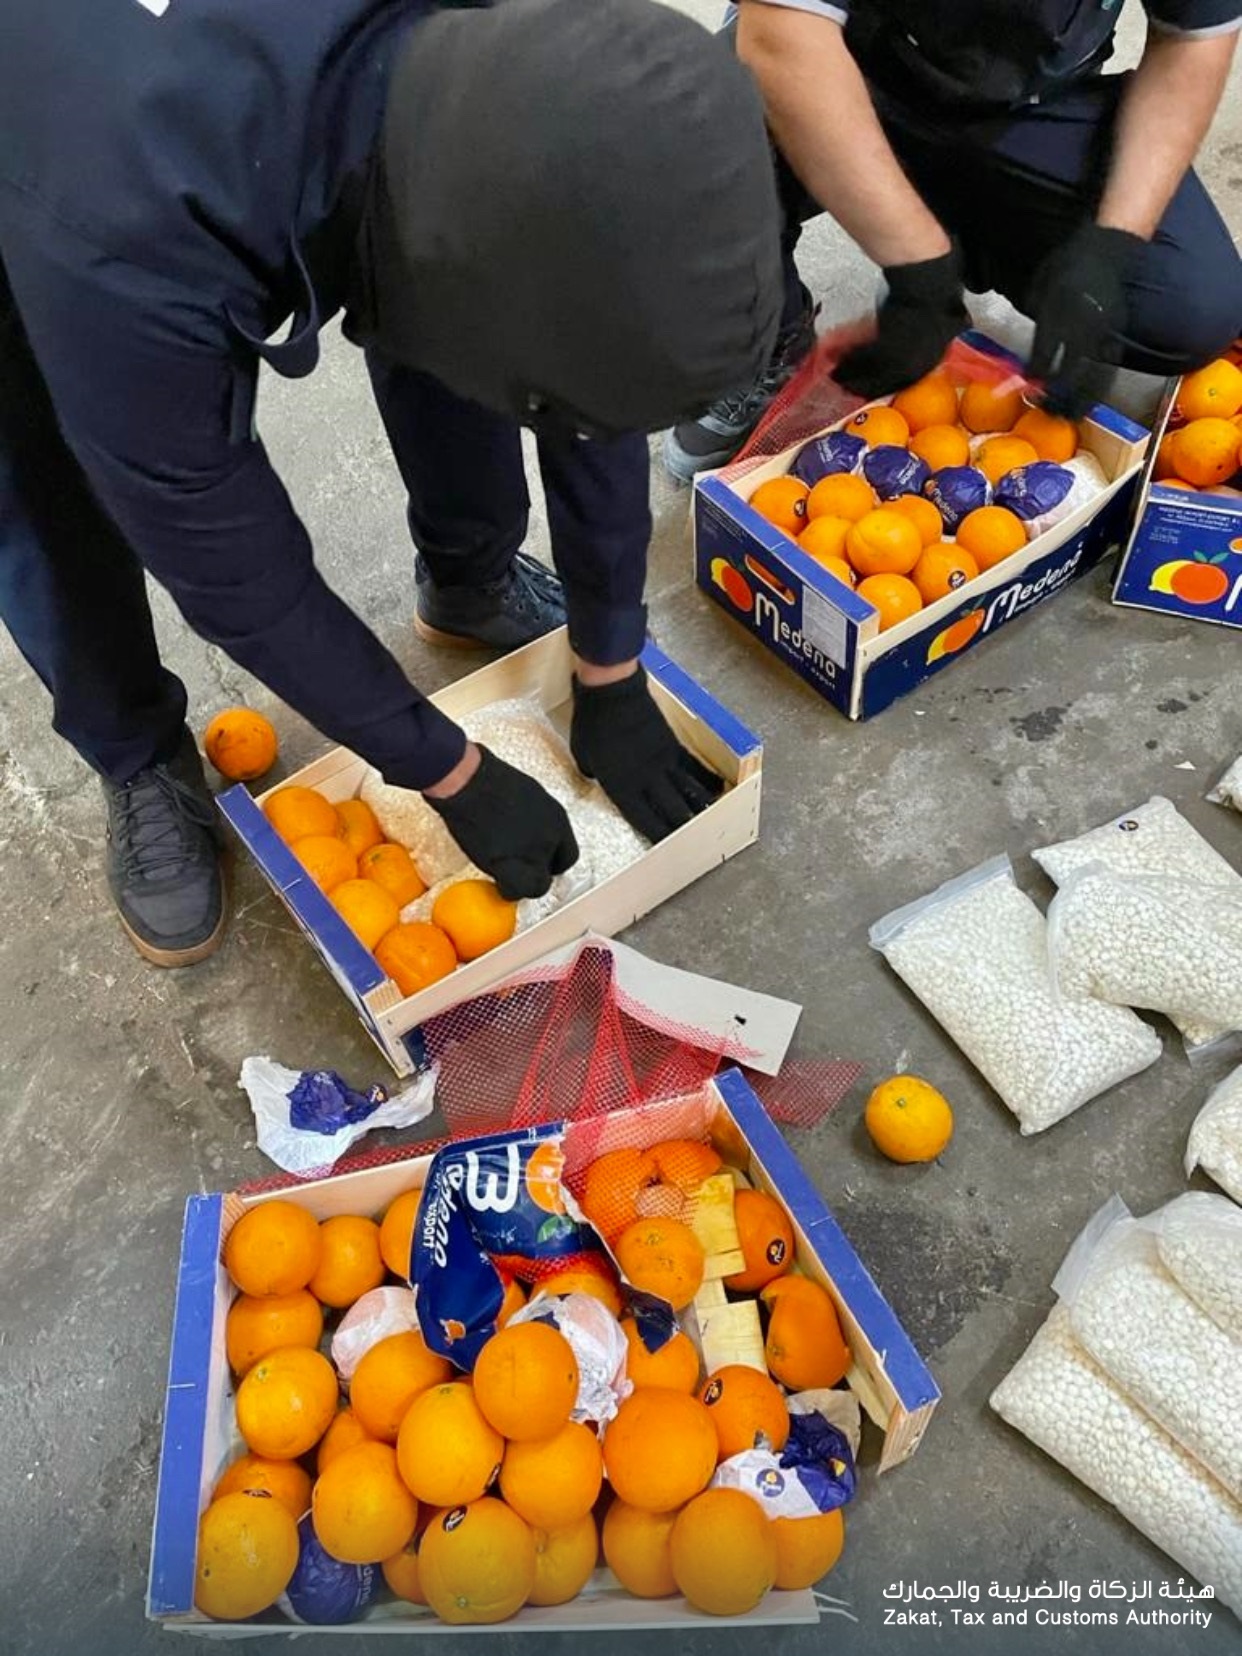 ضبط 4.5 مليون حبة من الكبتاجون في إرسالية برتقال بجدة